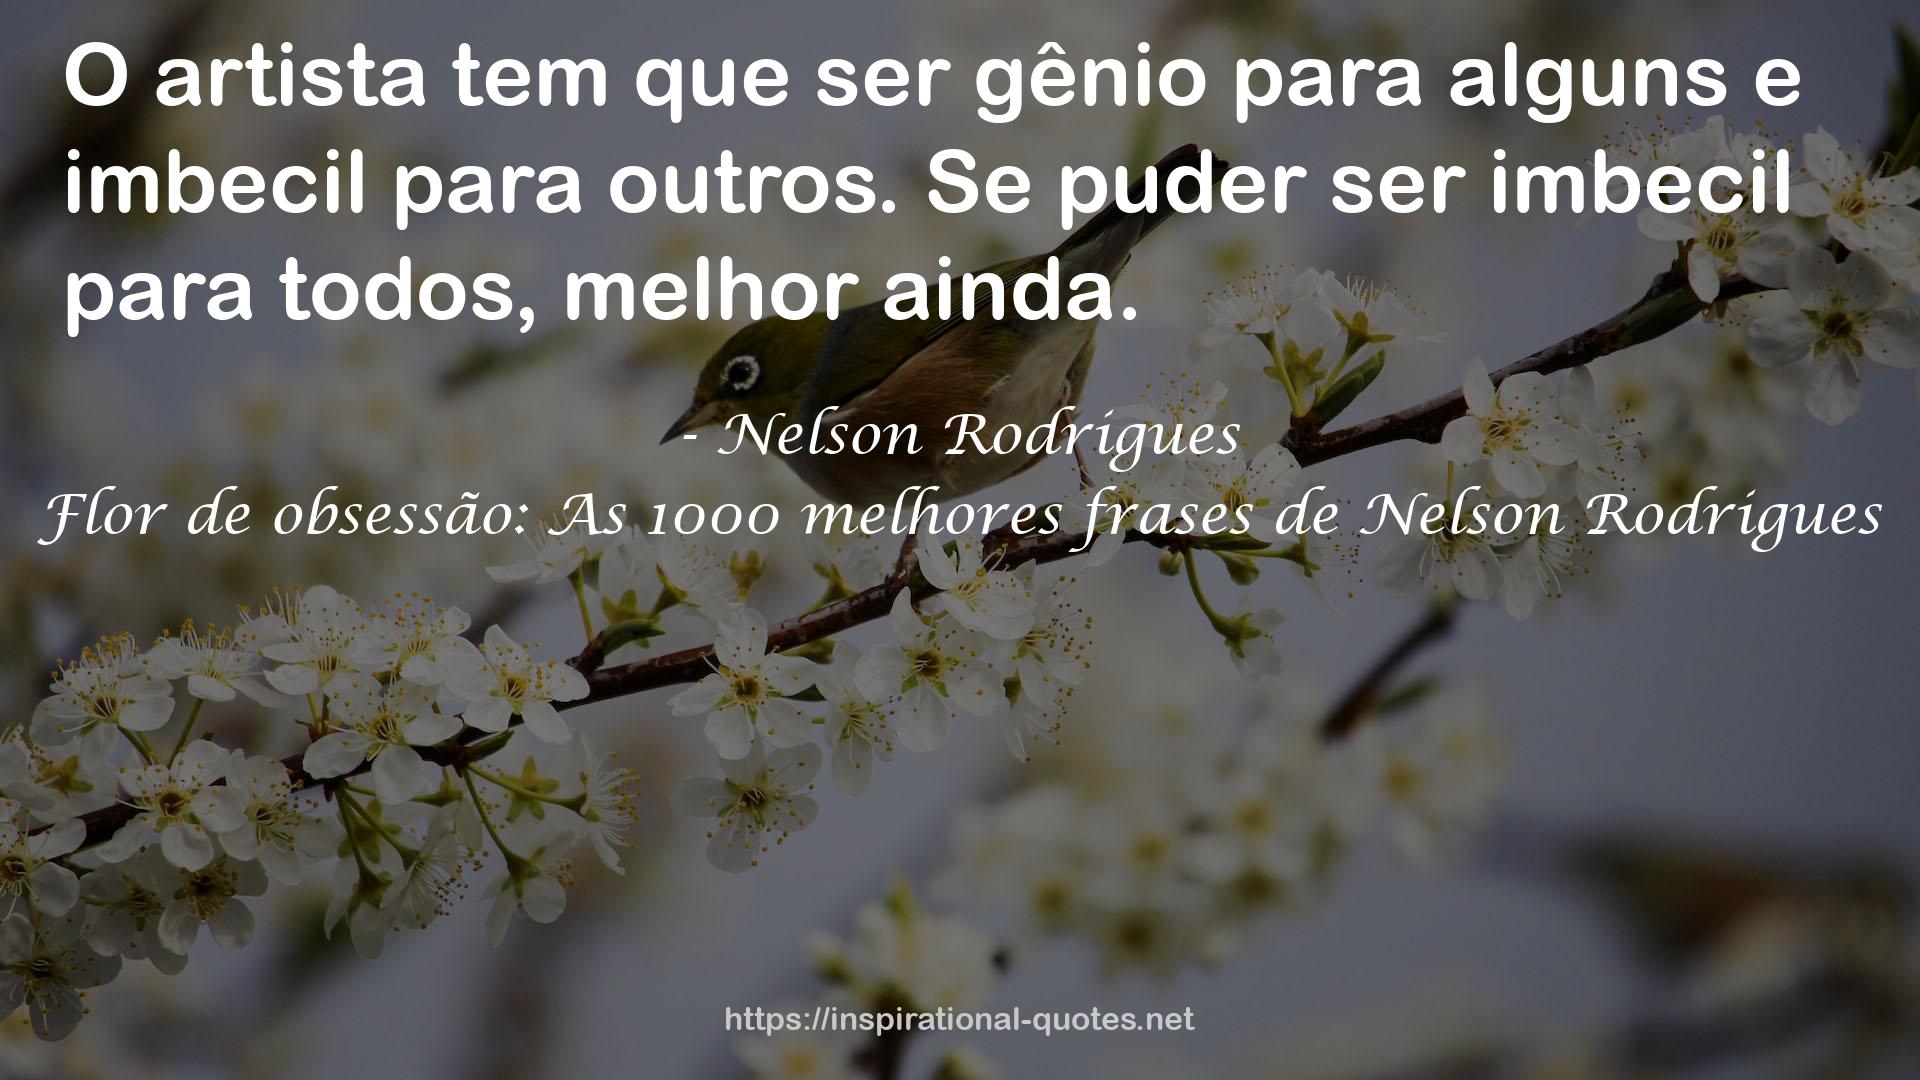 Flor de obsessão: As 1000 melhores frases de Nelson Rodrigues QUOTES